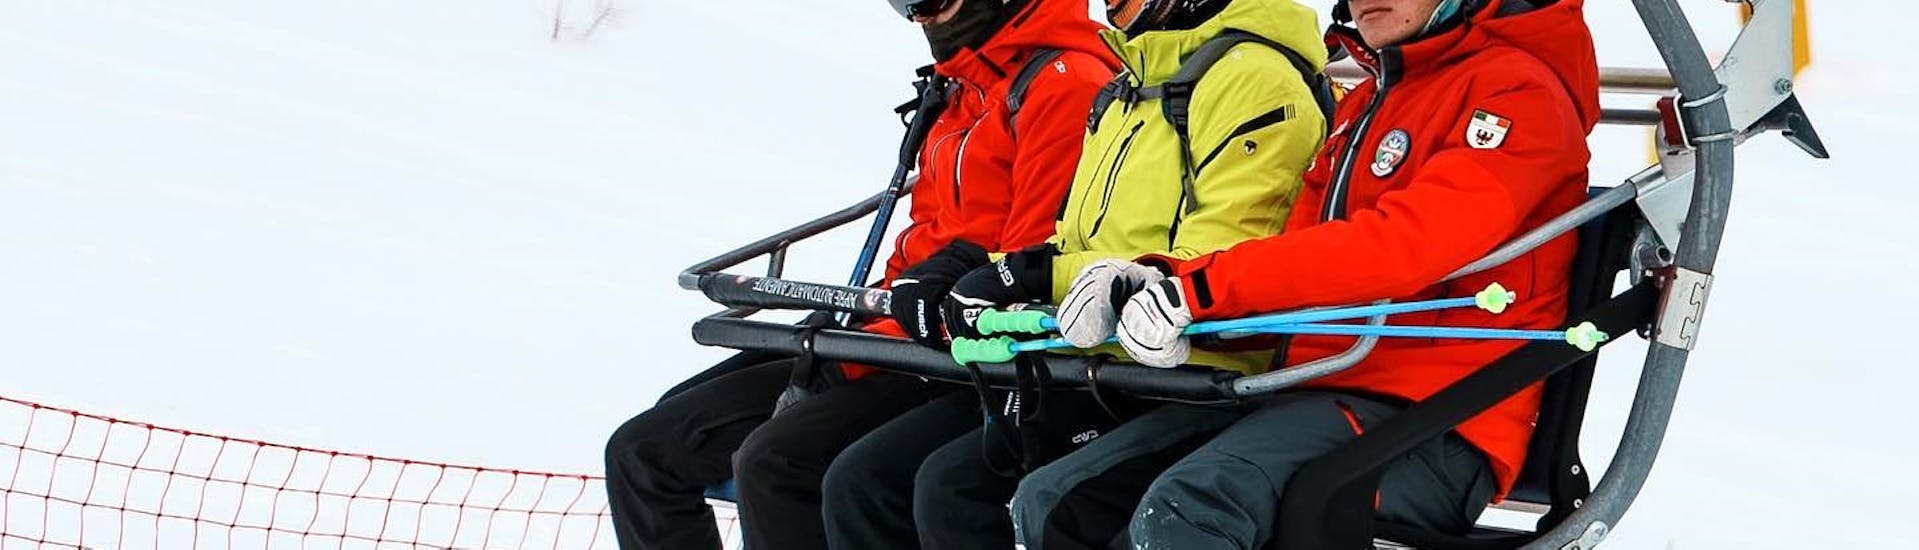 Clases de esquí para niños a partir de 14 años.